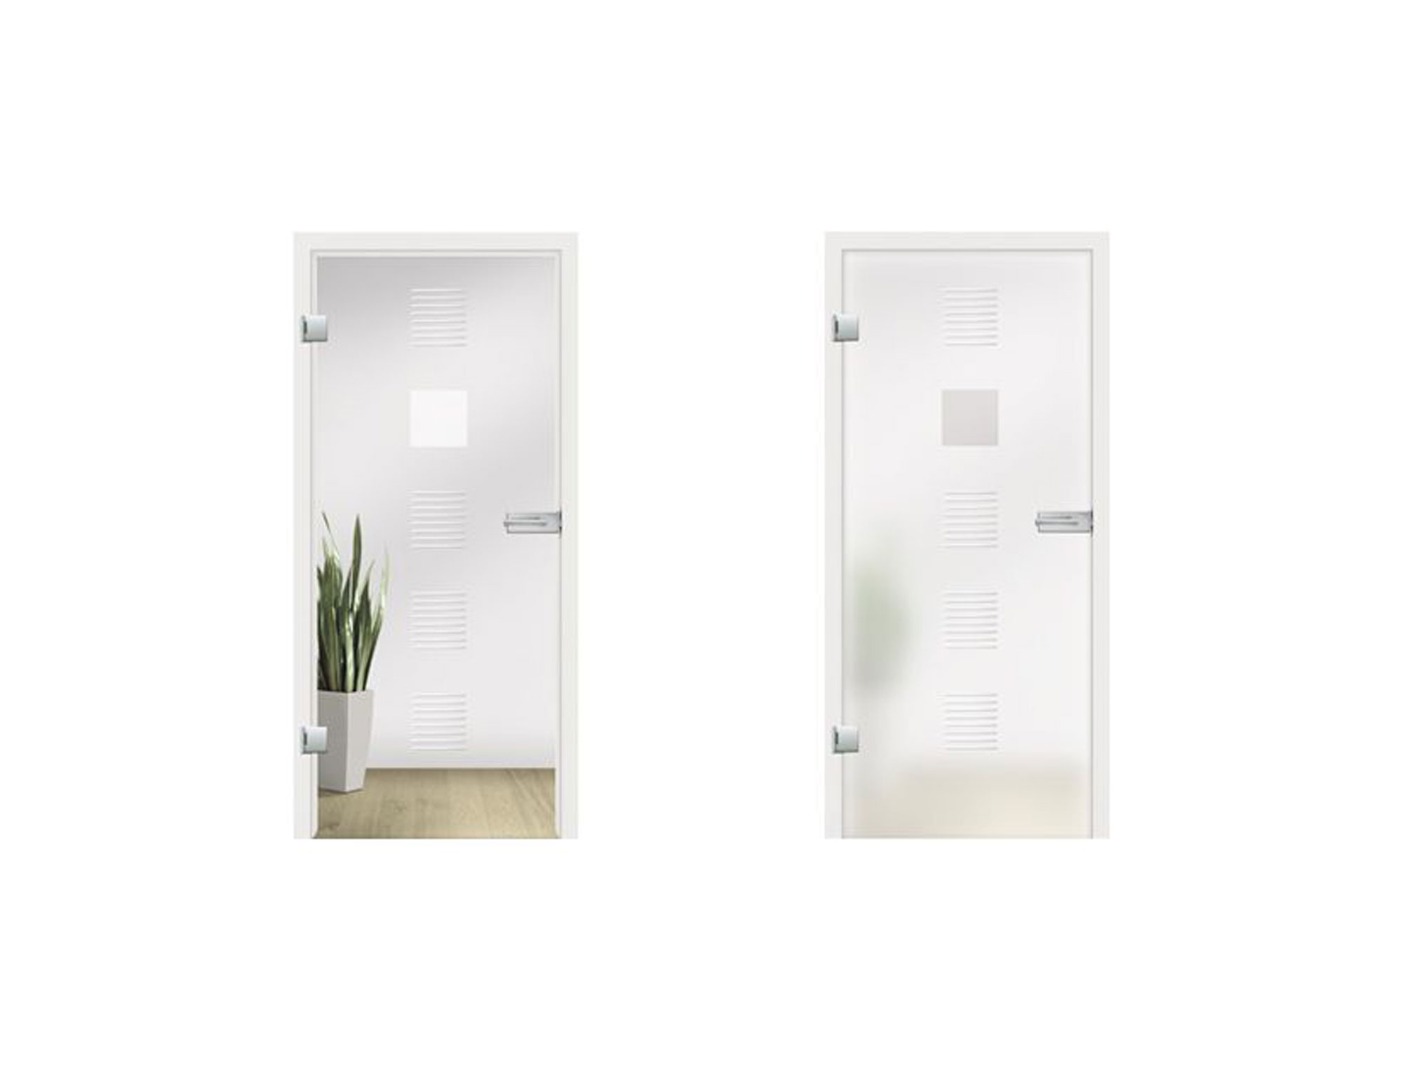 Finesse Grooved Glass Door Design - Interior Glass Doors